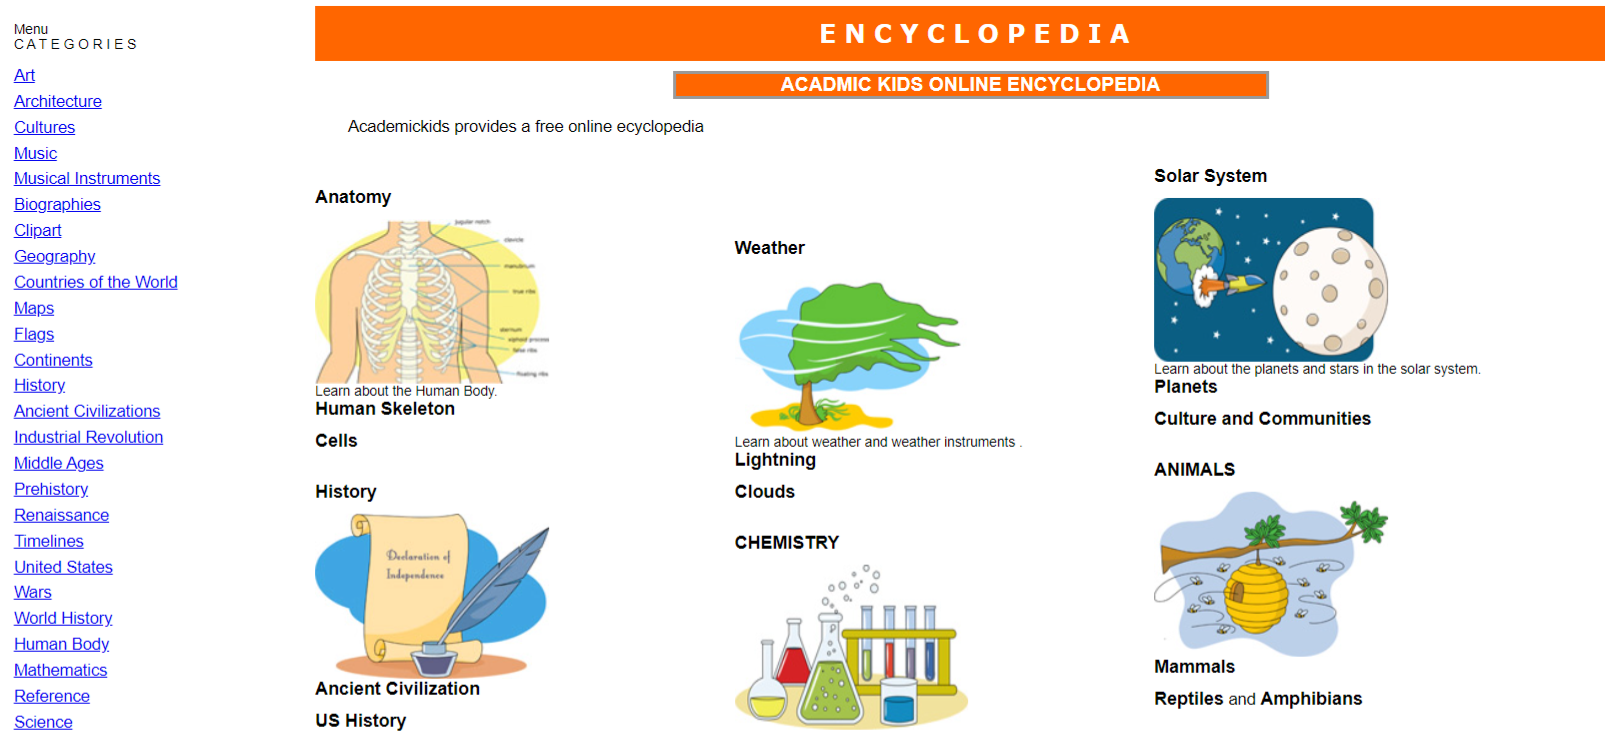 free online encyclopedia for kids 1 - Le 5 migliori enciclopedie online gratuite per studenti e bambini